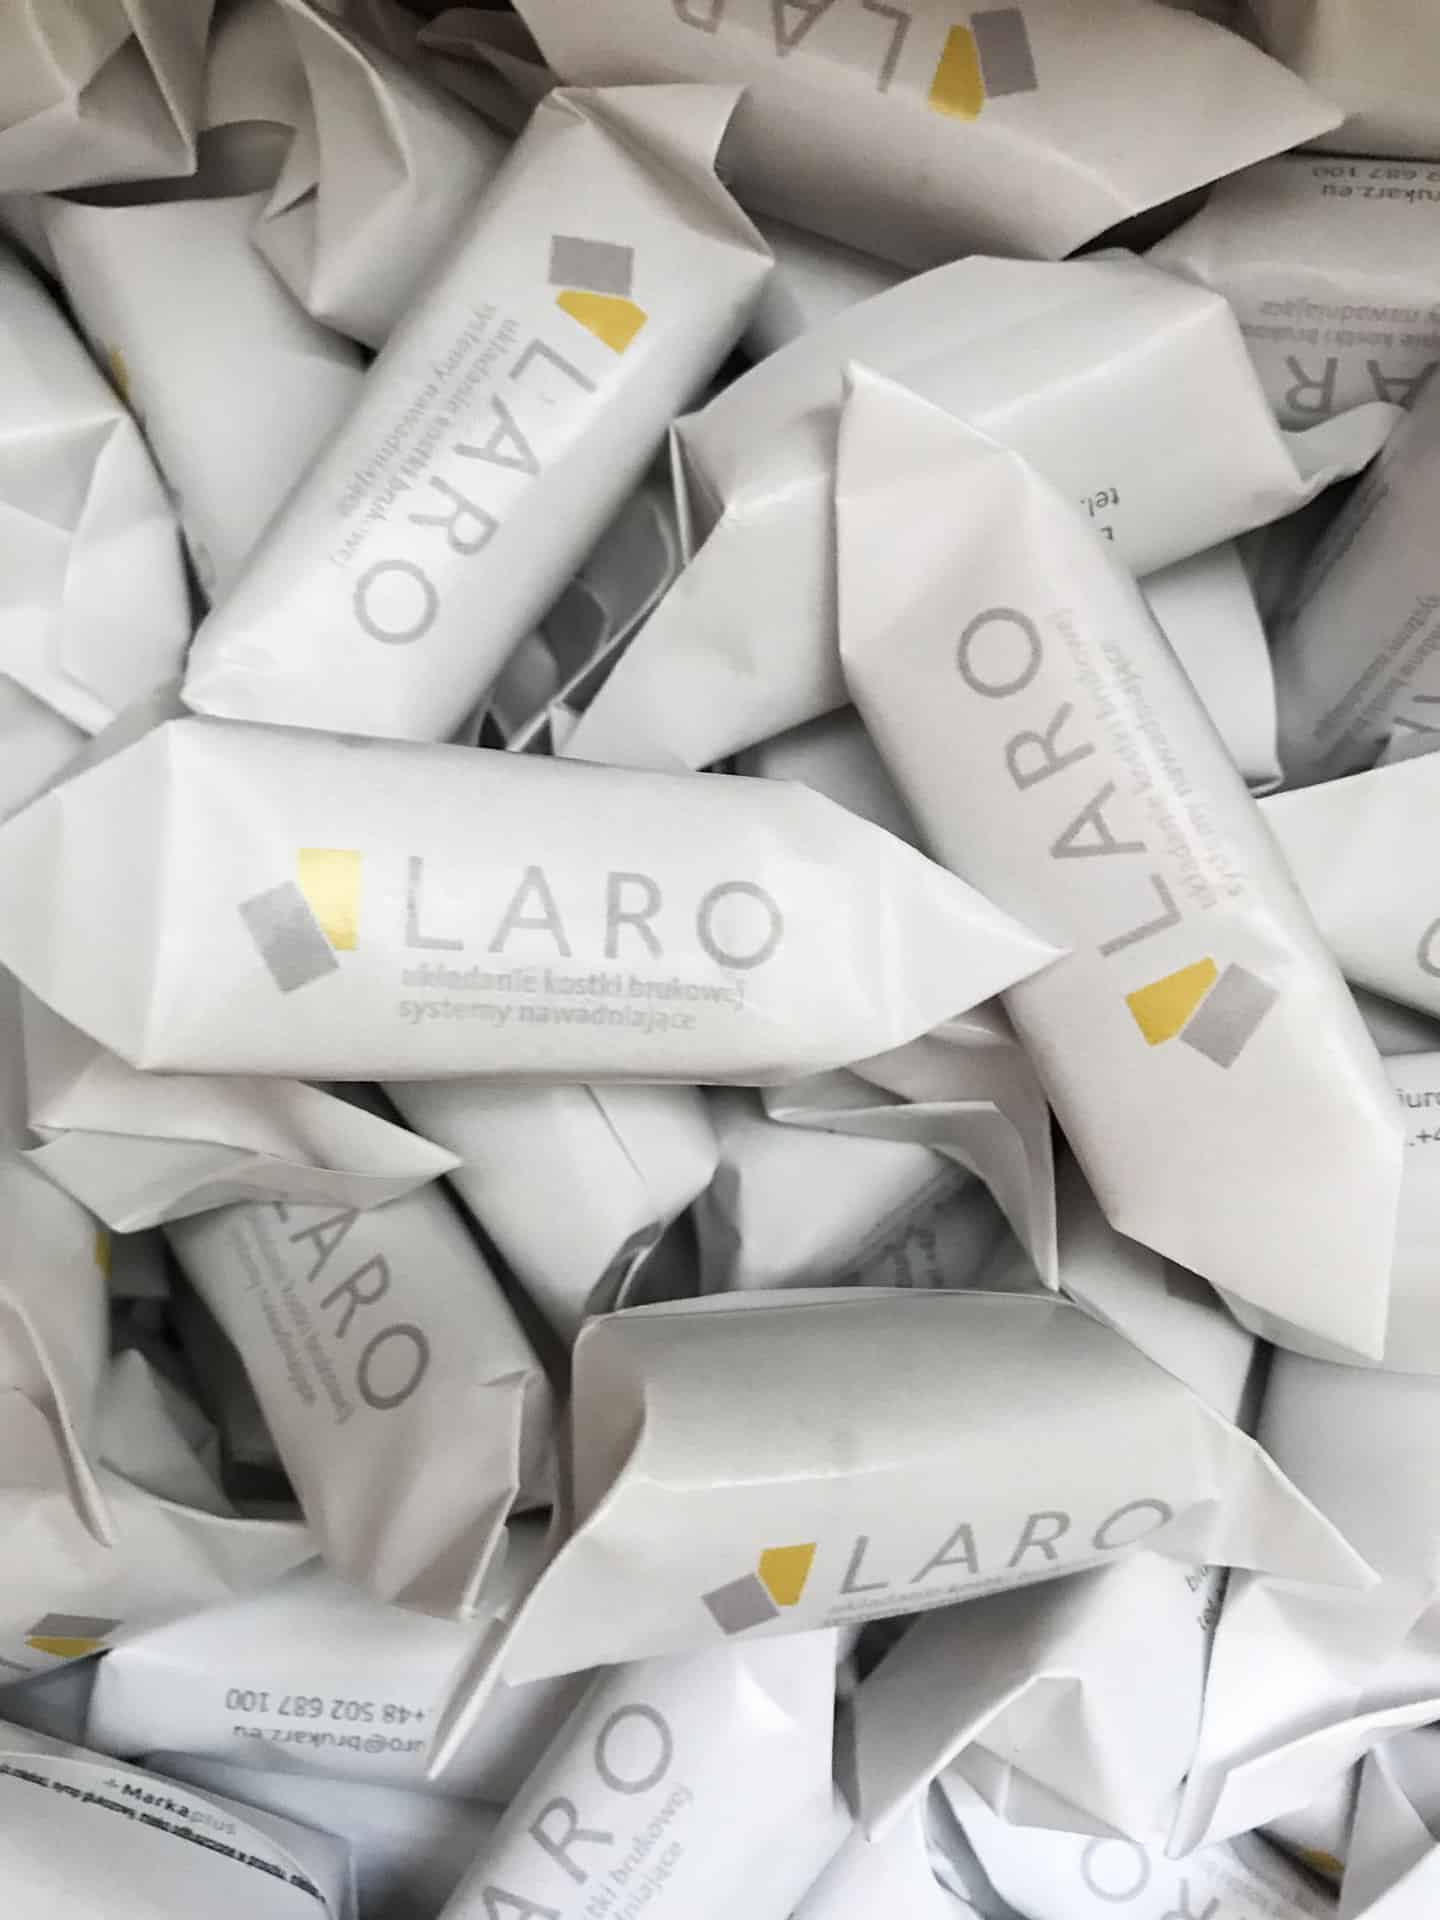 krówki reklamowe z logo Laro